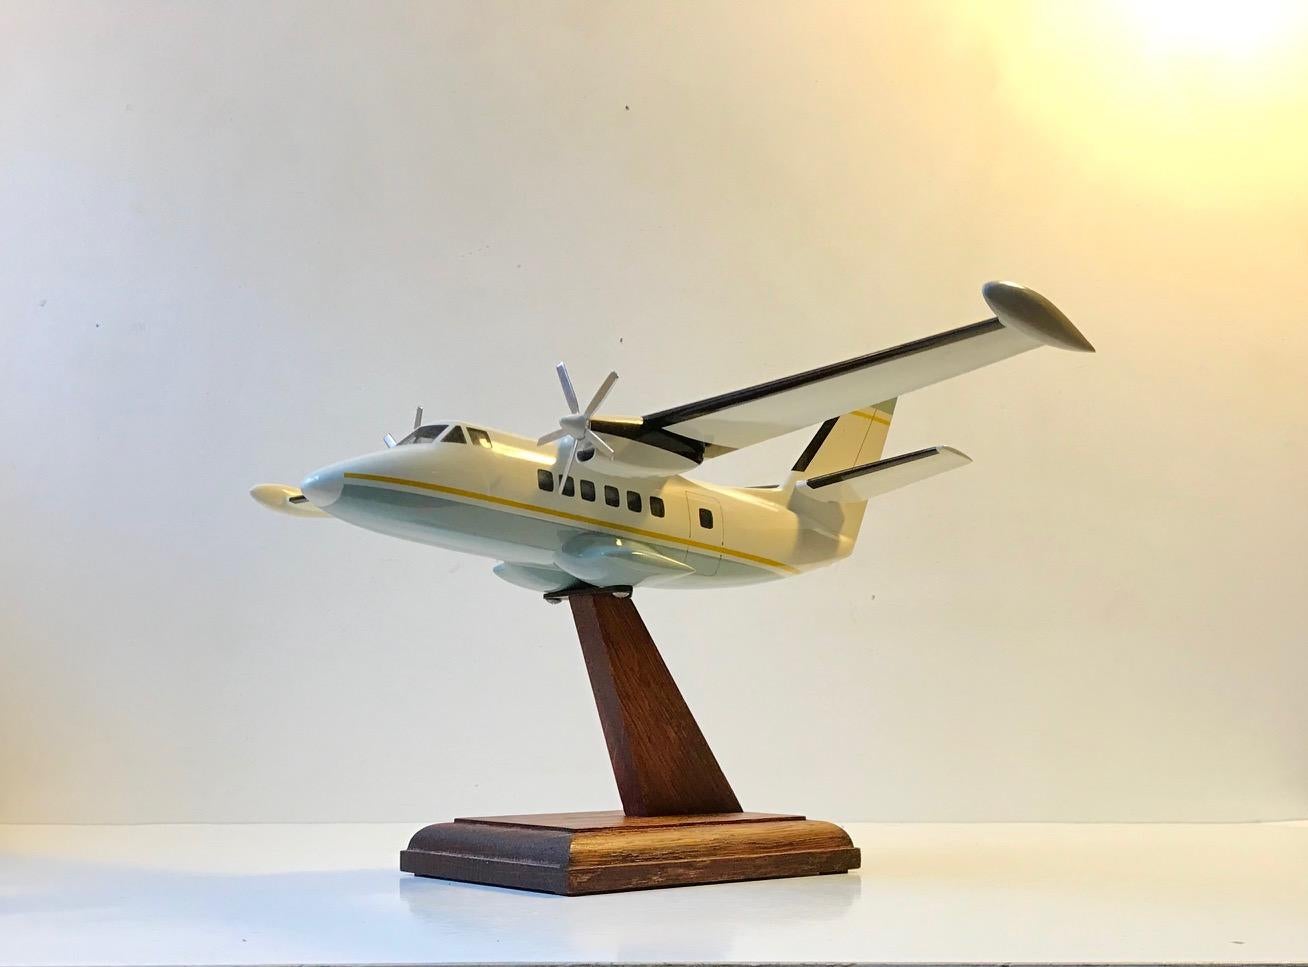 Ein gut gemachtes montiertes Tischmodell eines Flugzeugs/Privatjets. Professionell montiert auf einem Eichenständer. Unbekannter skandinavischer Hersteller, ca. 1970-1975. Es ist aus lackiertem Acryl, Weißblech und Eiche (Ständer) gefertigt.